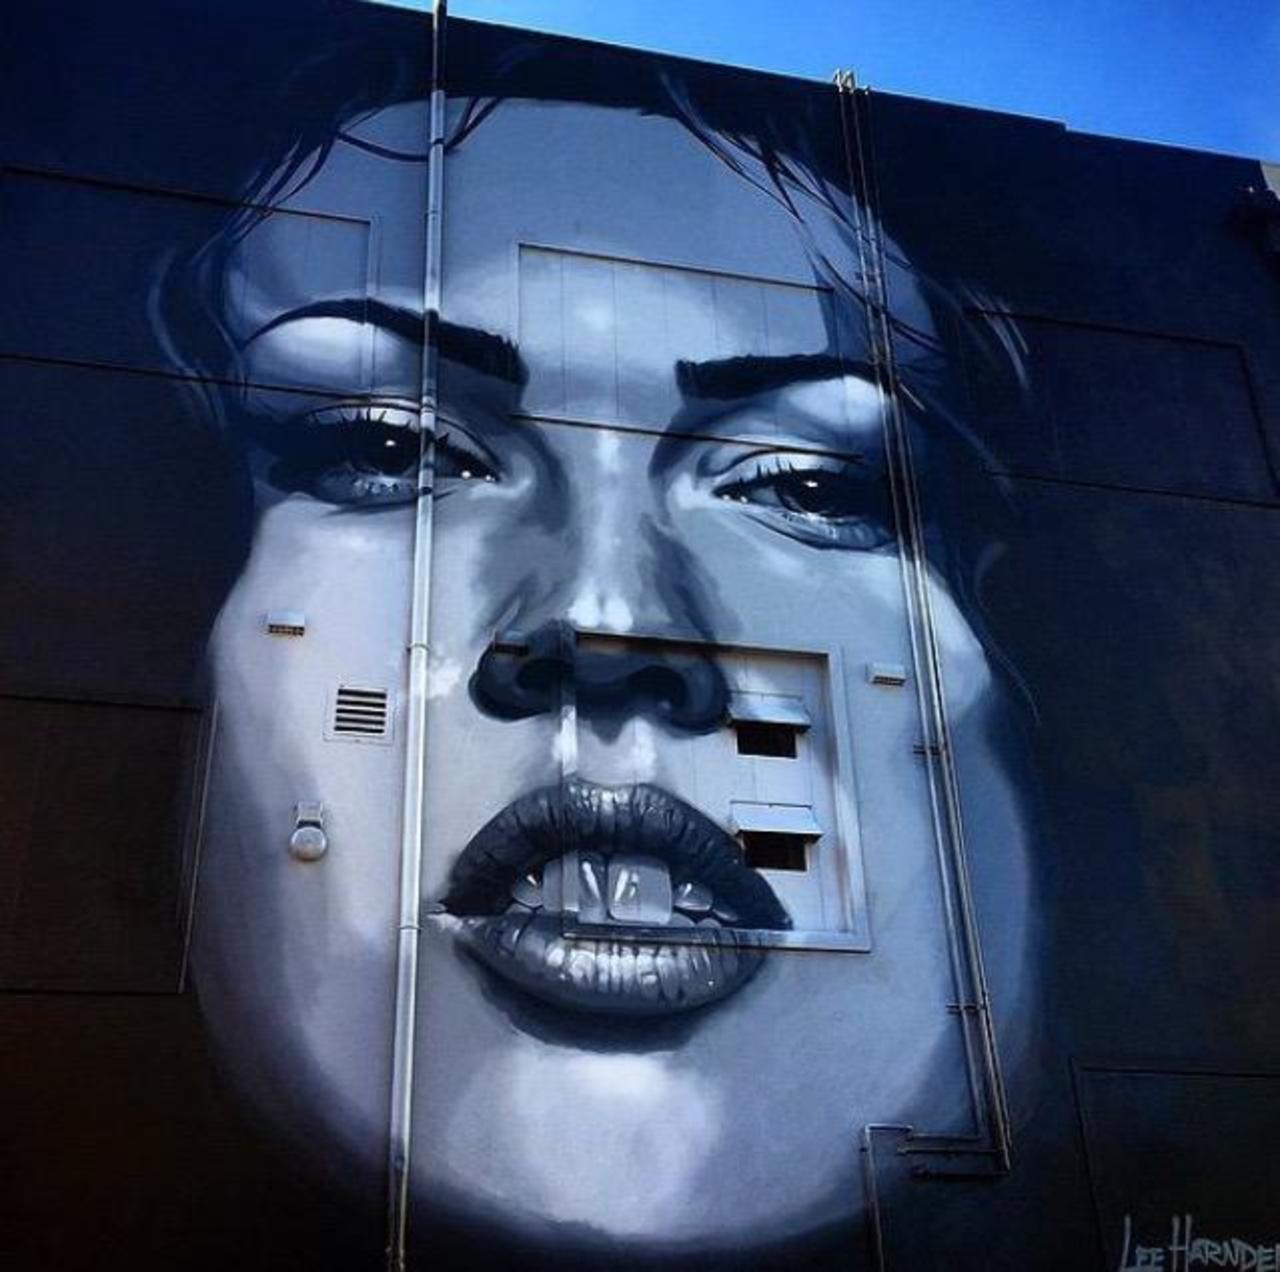 RT GoogleStreetArt: Street Art by Irocka 

#art #graffiti #mural #streetart http://t.co/mSXXBRBn8x https://goo.gl/7kifqw